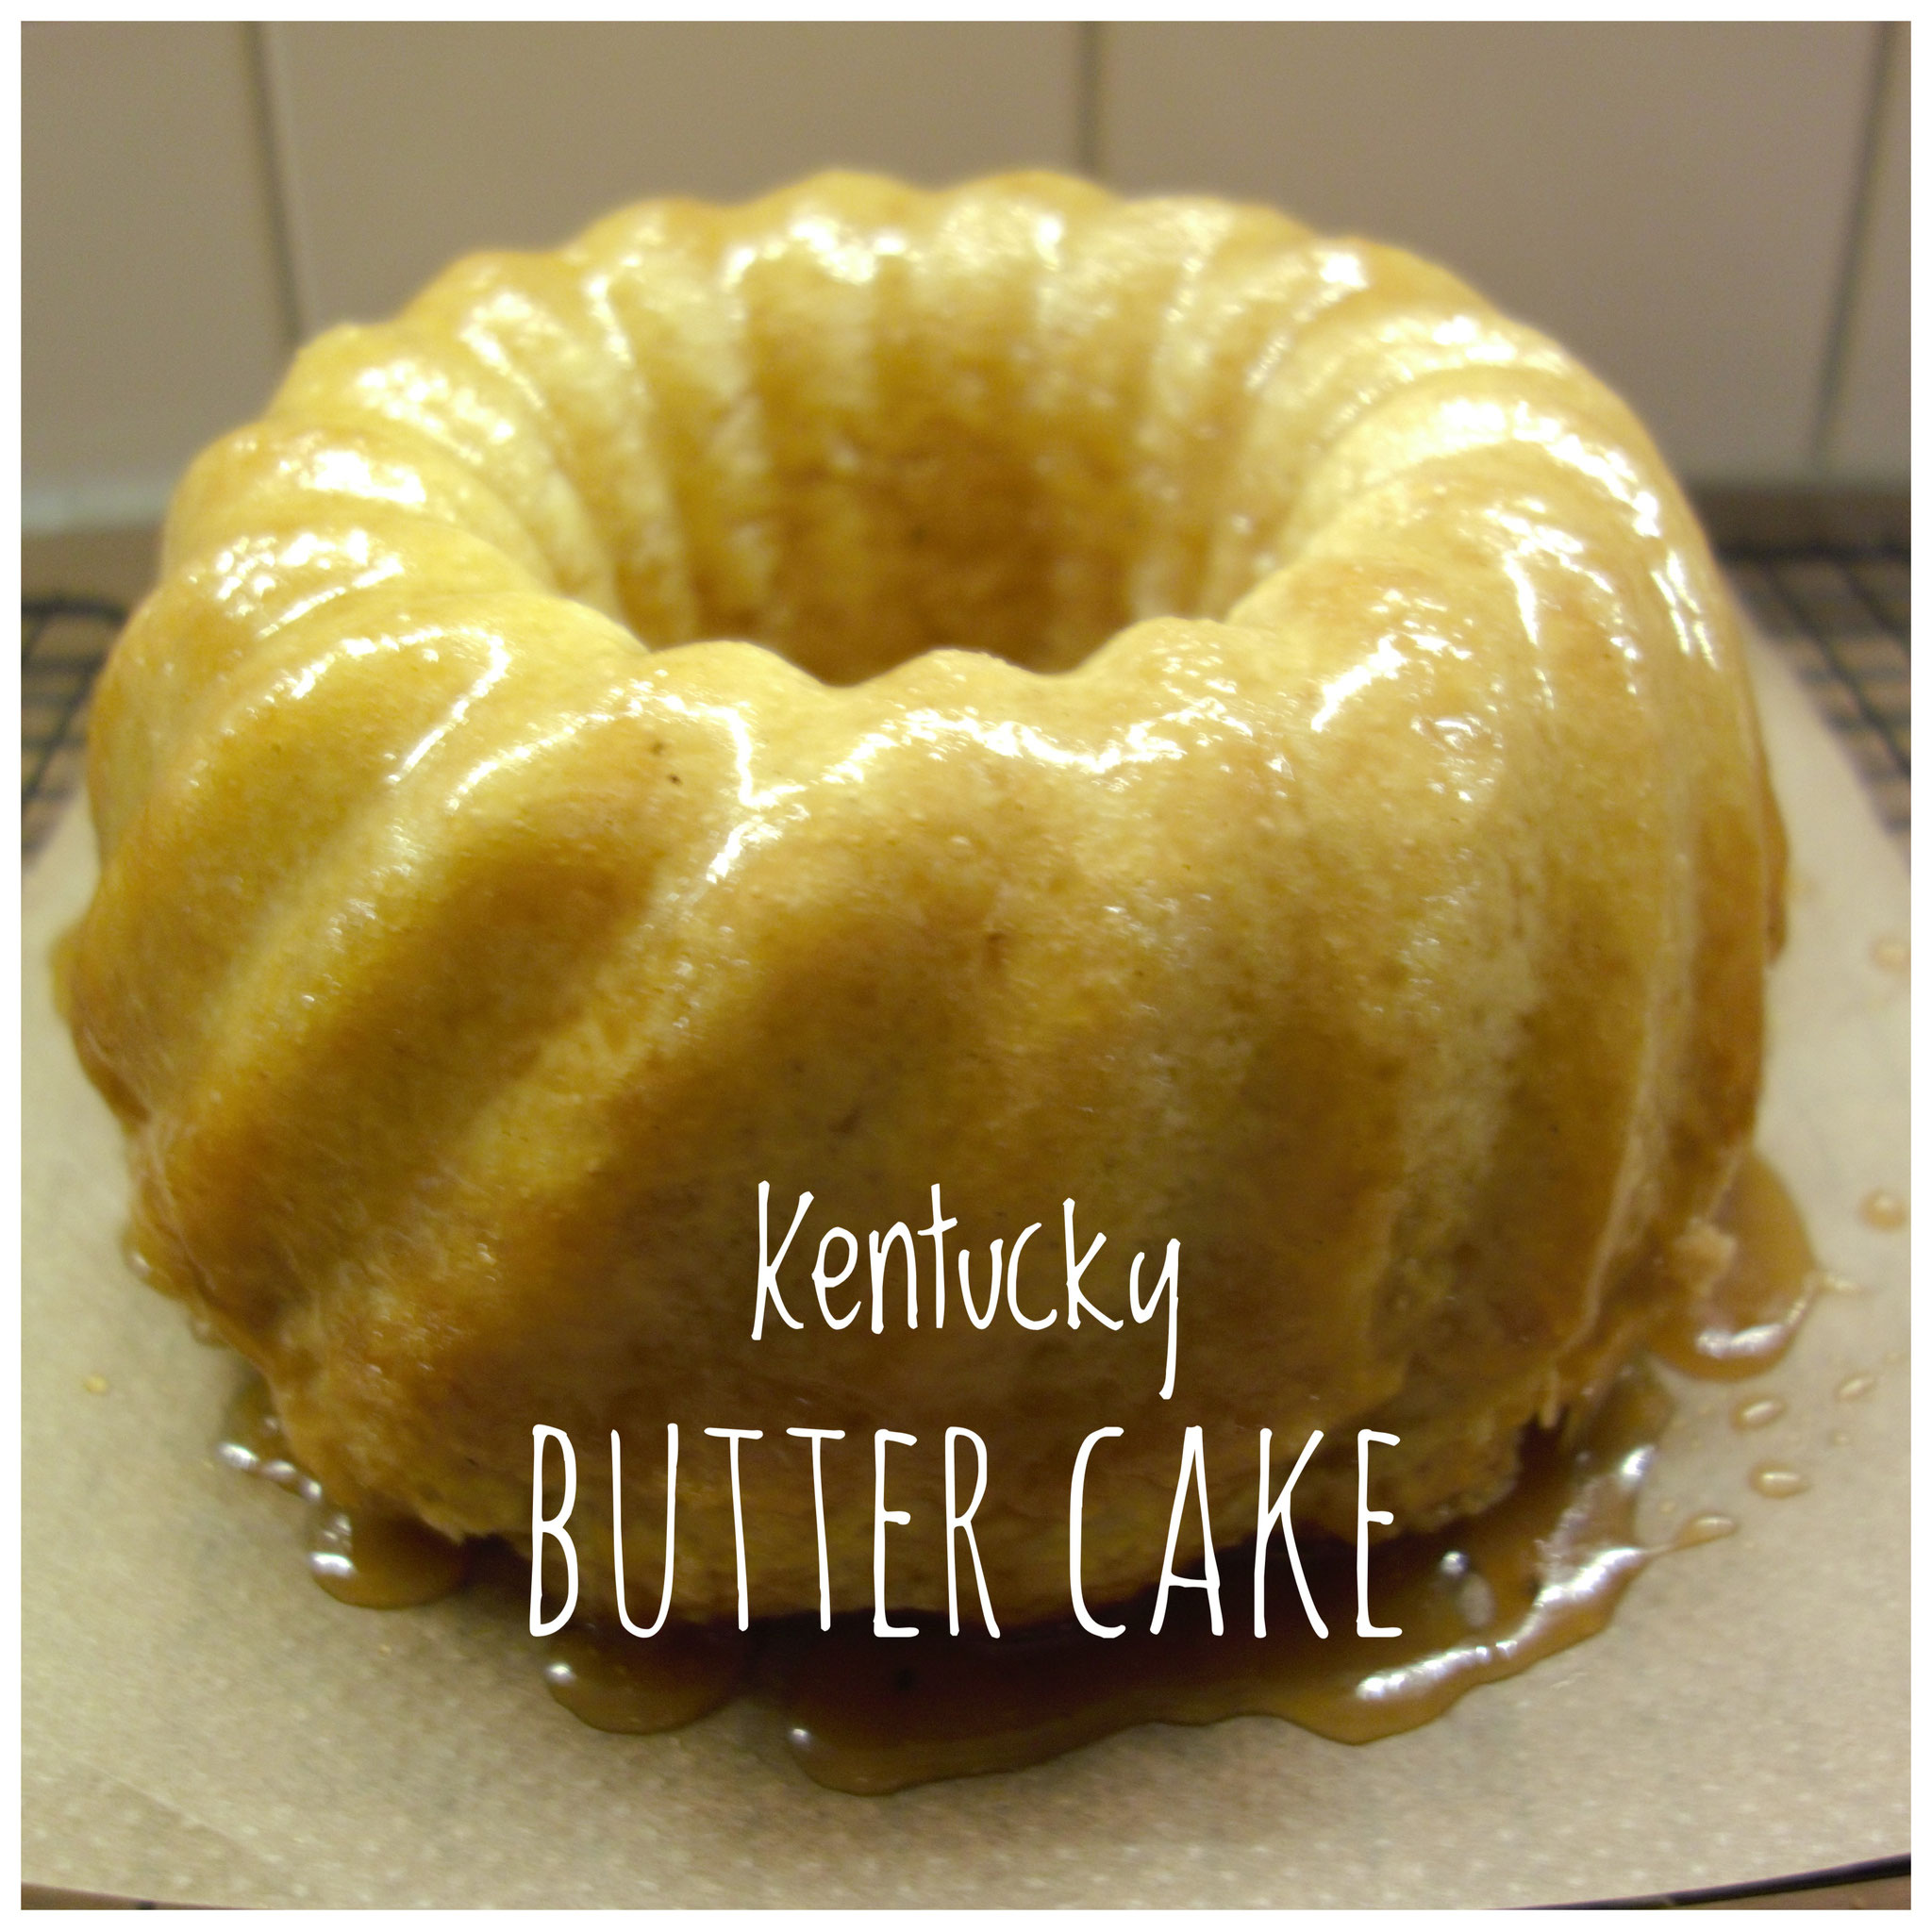 Kentucky Butter cake